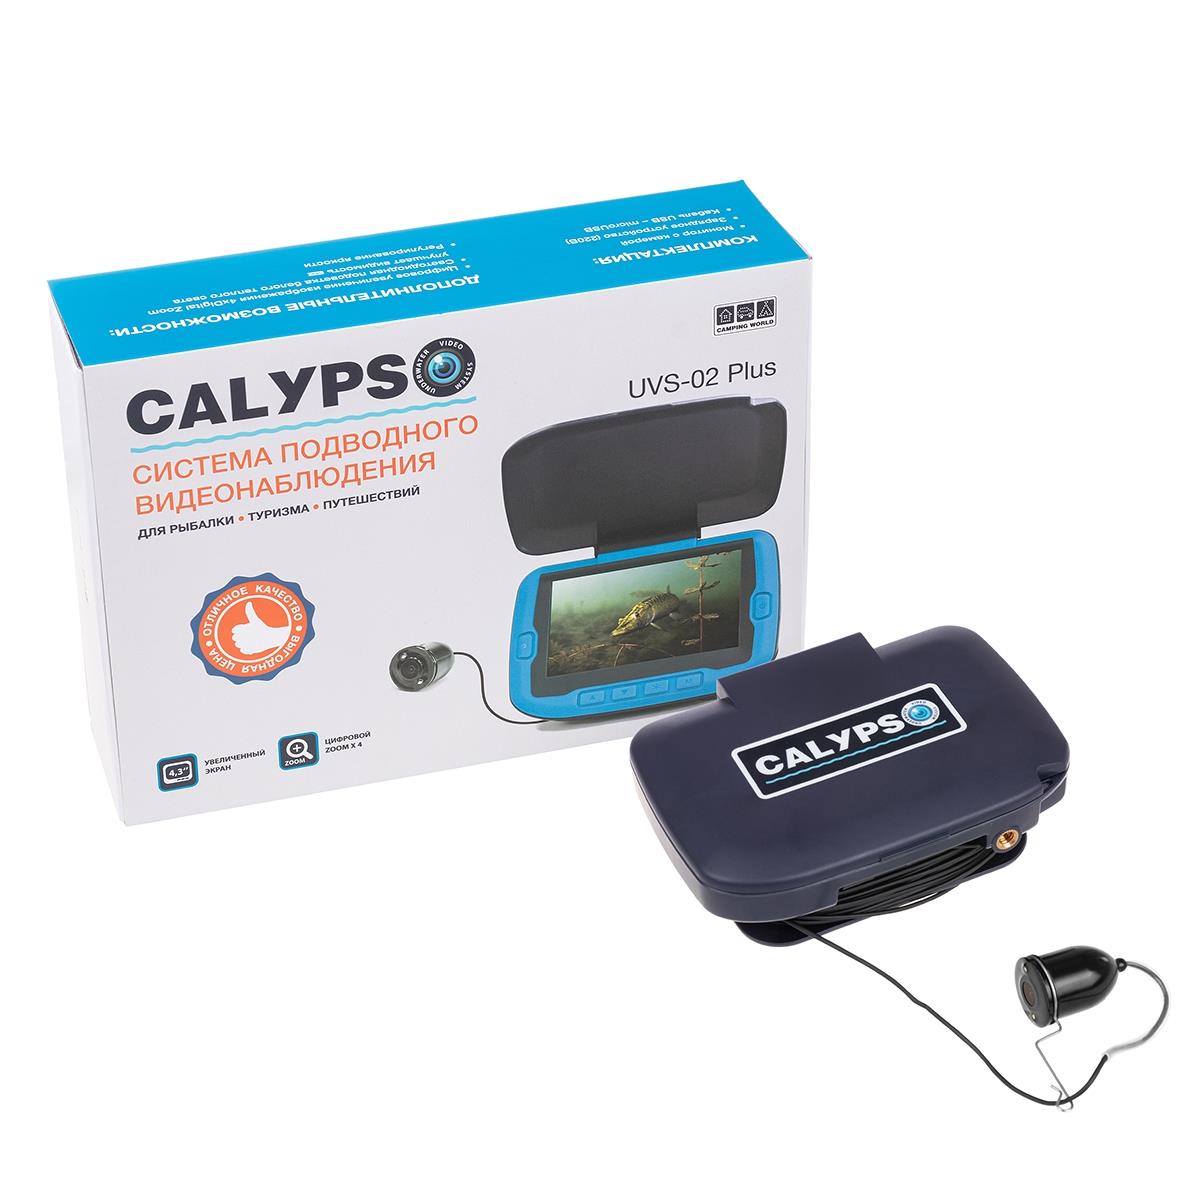 Подводная видеокамера CALYPSO UVS-02 PLUS (FDV-1112) кресло camping world